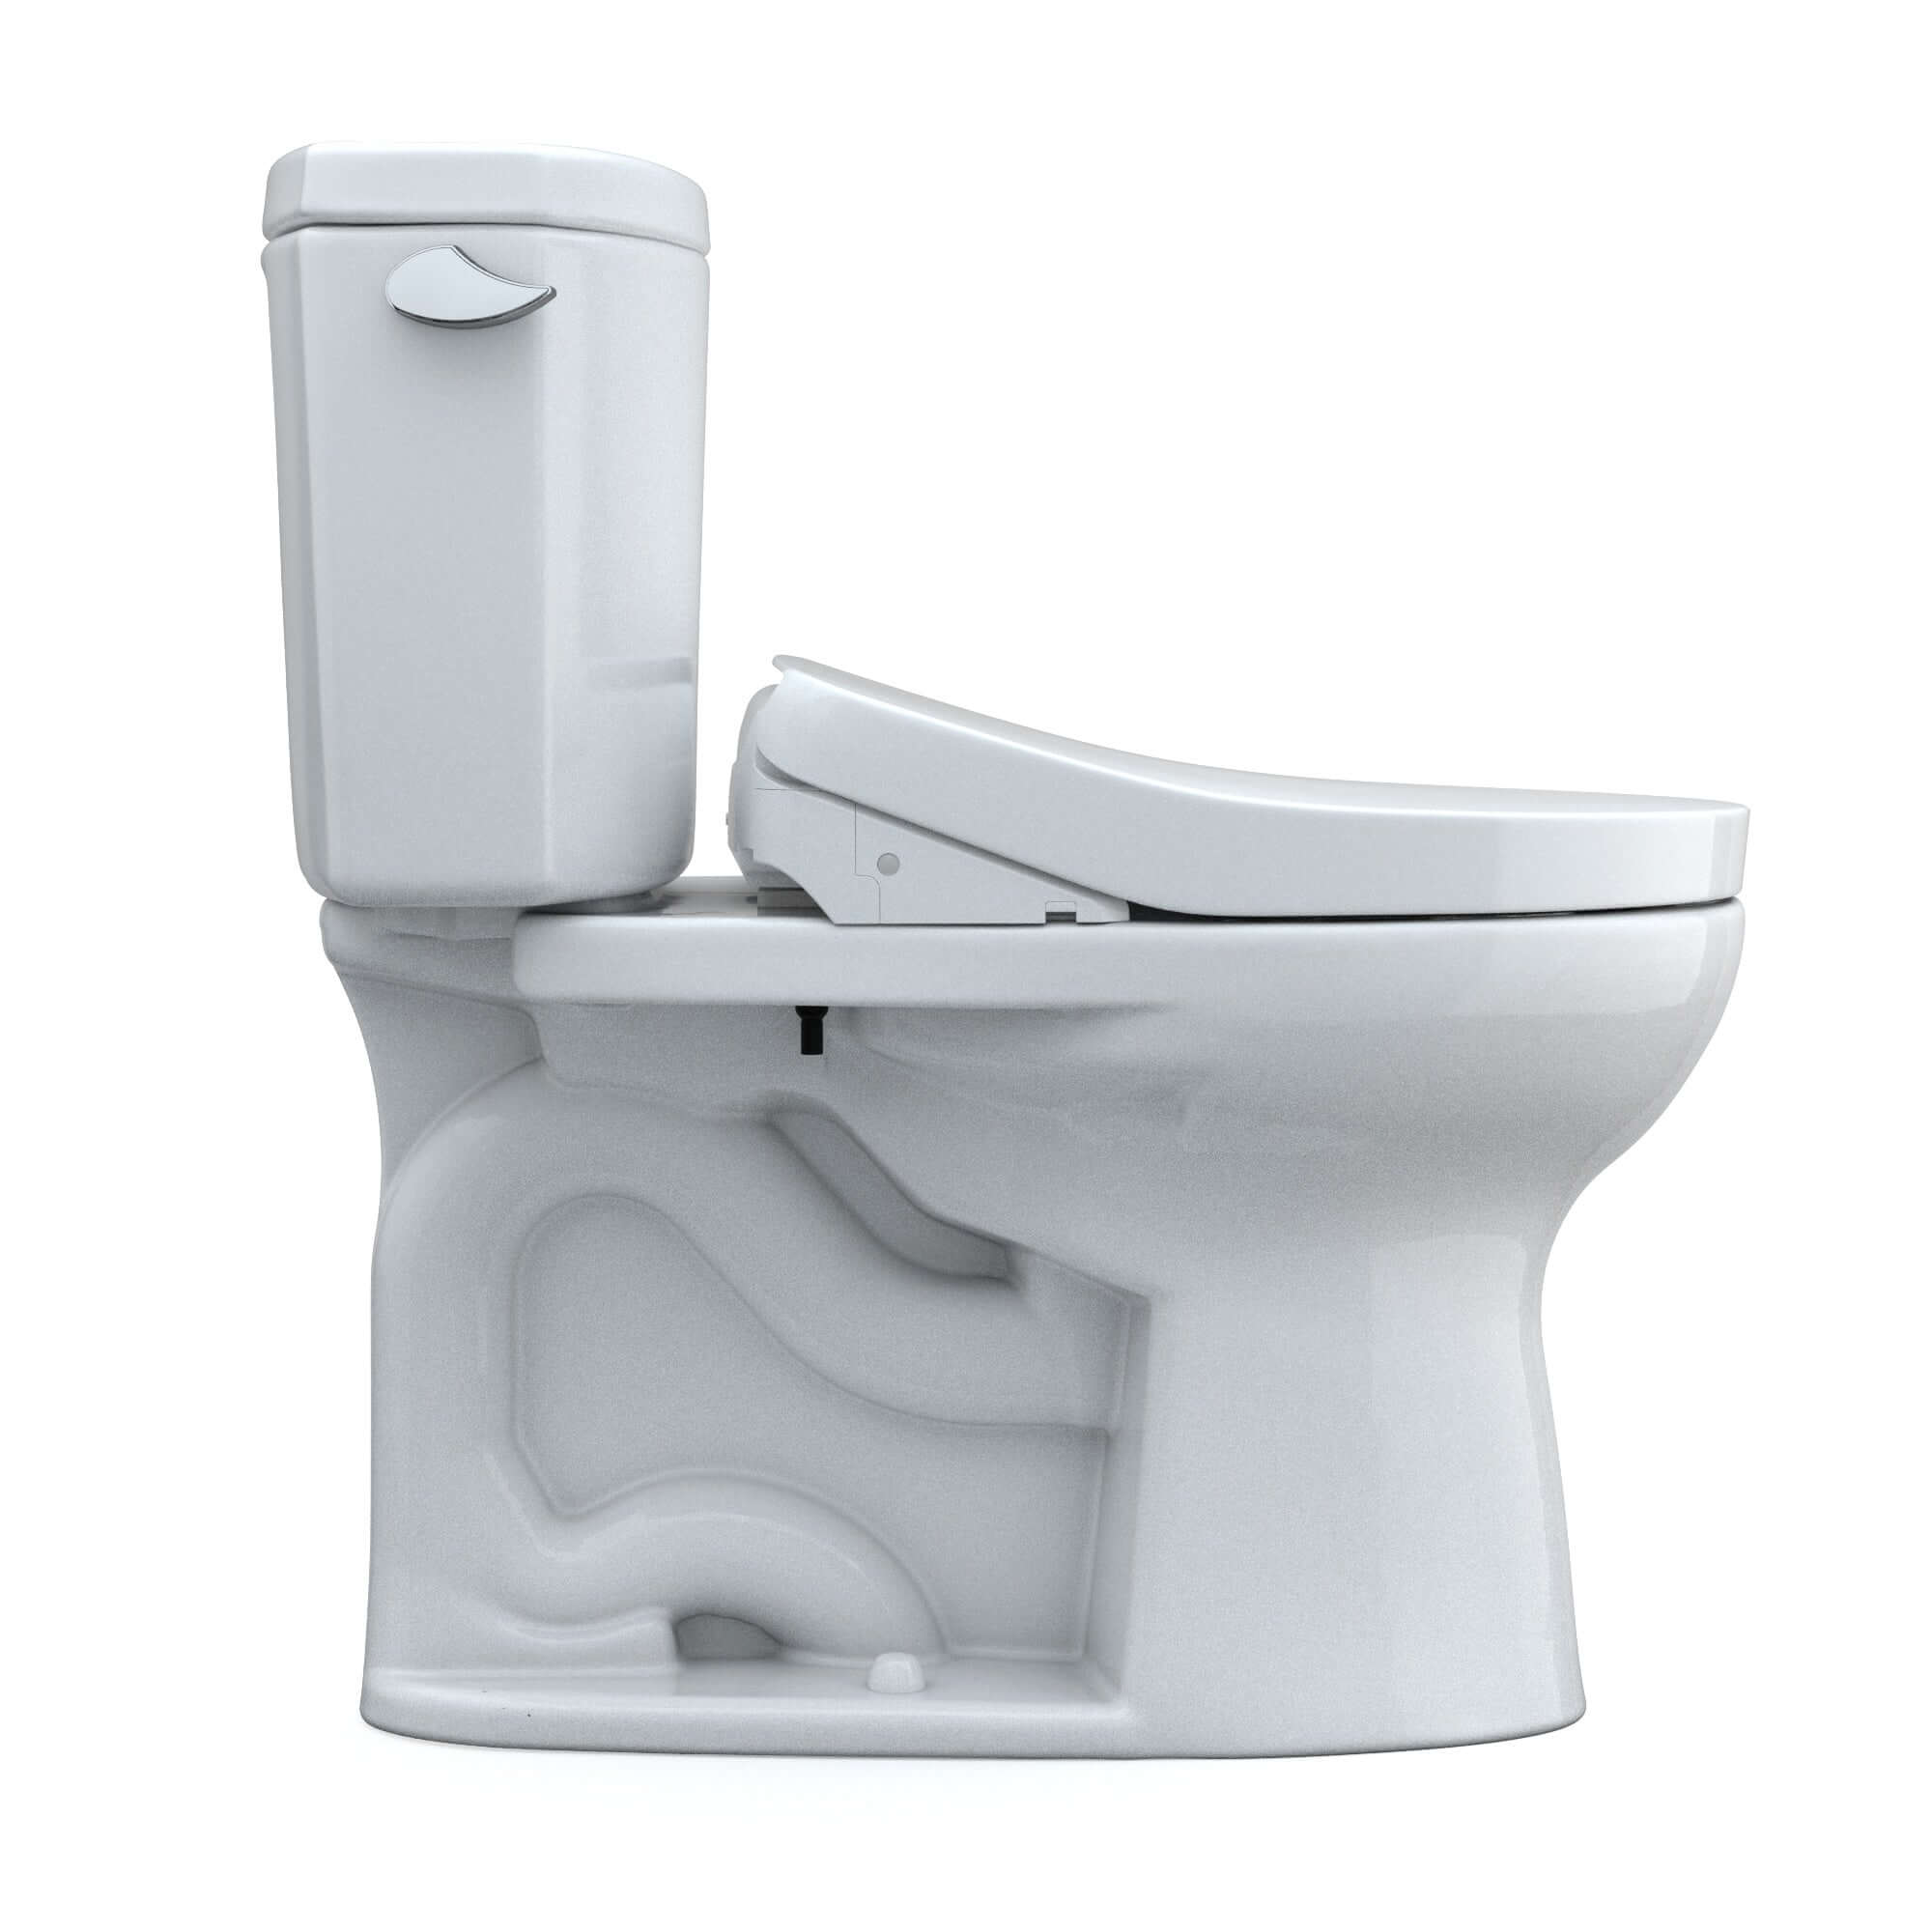 TOTO WASHLET+ Drake II Two-Piece 1.28 GPF Universal Height Toilet S550e Contemporary Bidet Seat, Cotton White - MW4543056CEFG(A)#01